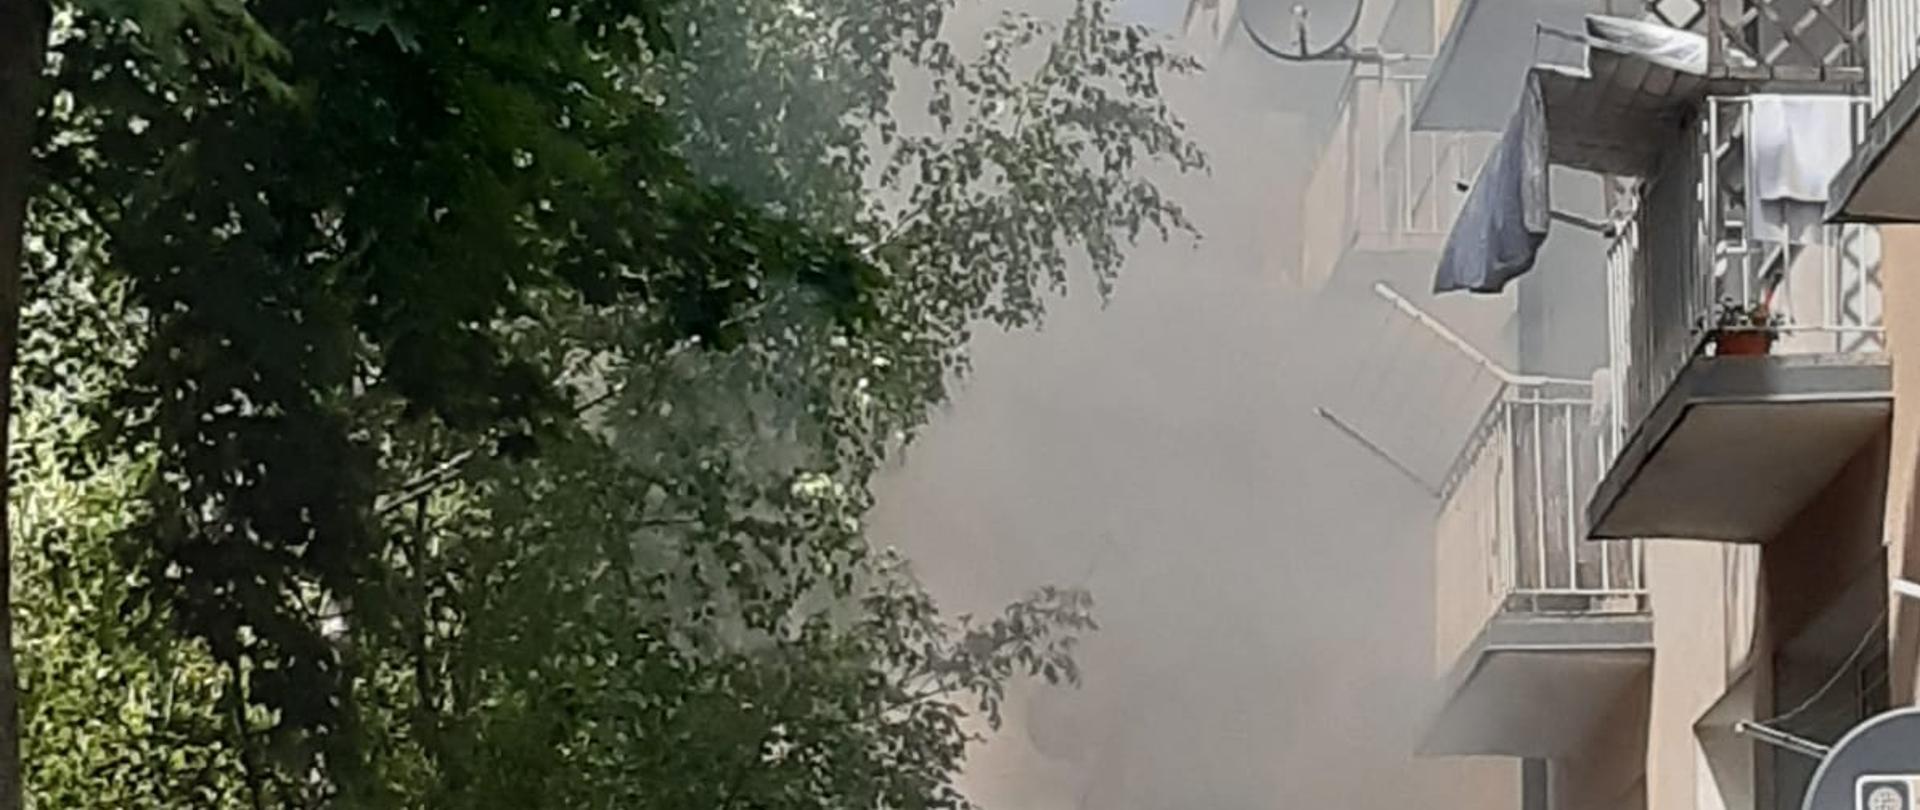 Zdjęcie przedstawia budynek mieszkalny wielorodzinny. Przed budynkiem widać dym. 